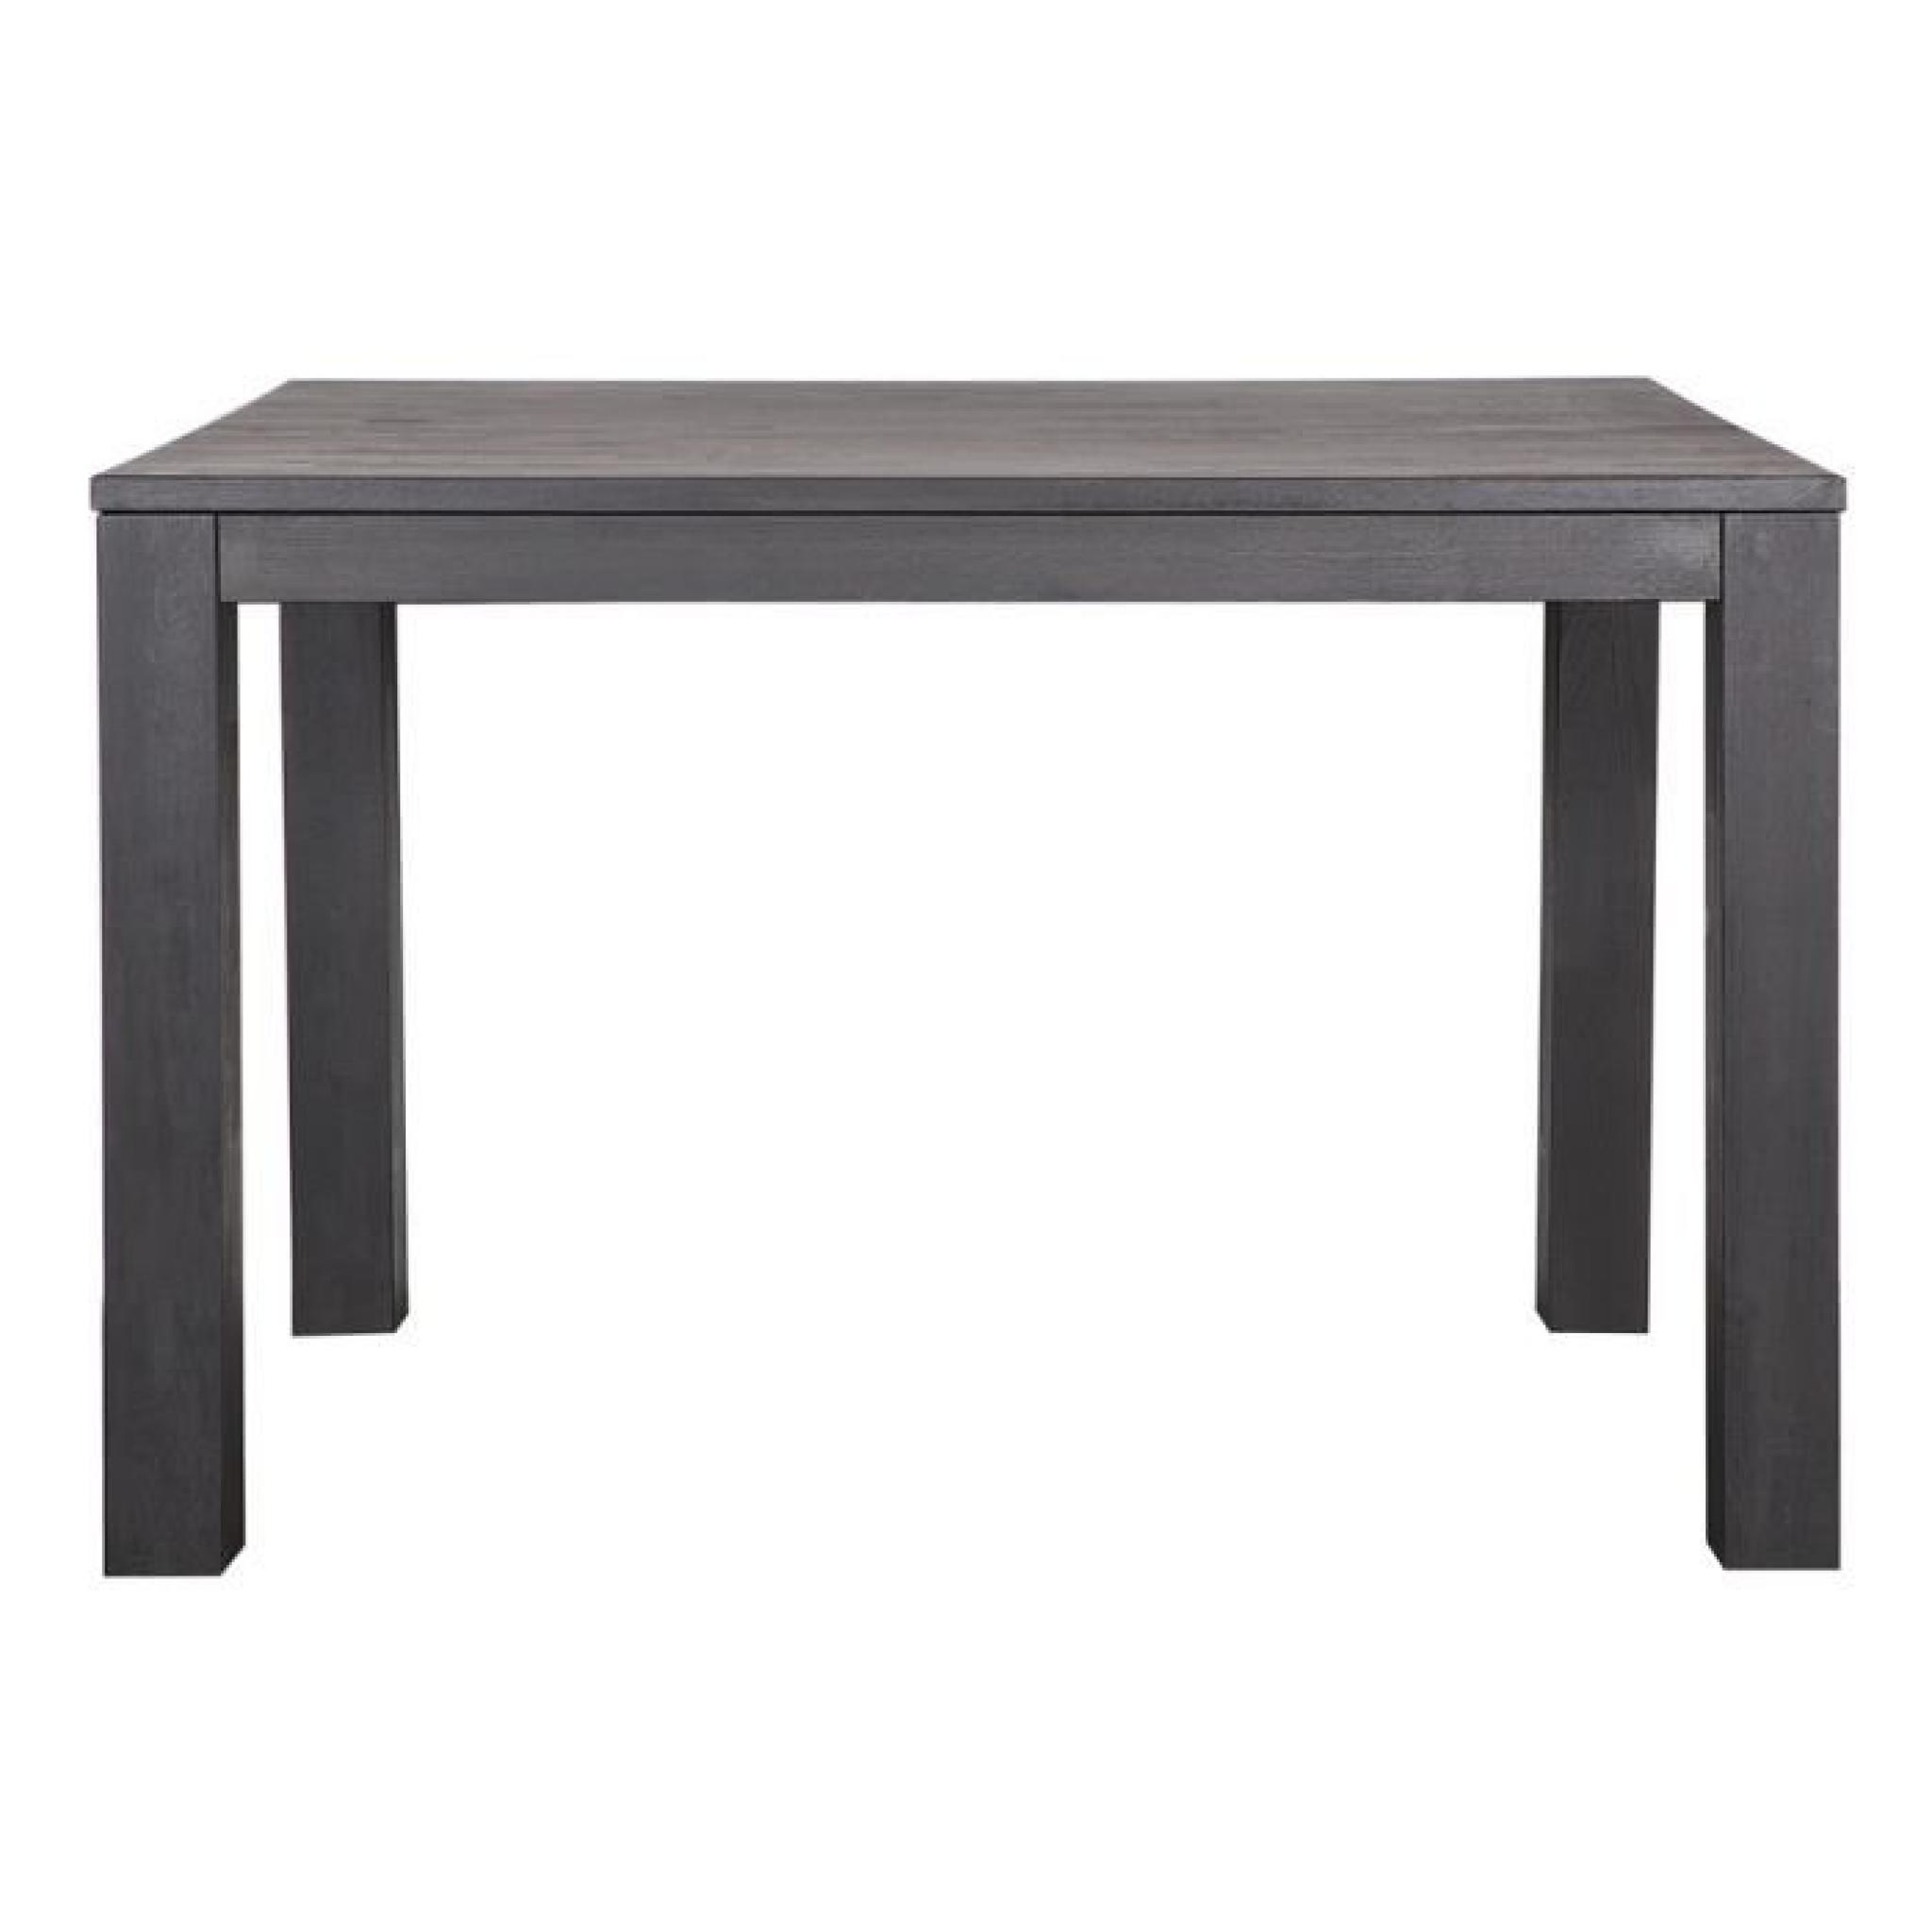 Table chêne massif noir pieds 8 x 8 cm, H 78 x L 130 x P 130 cm